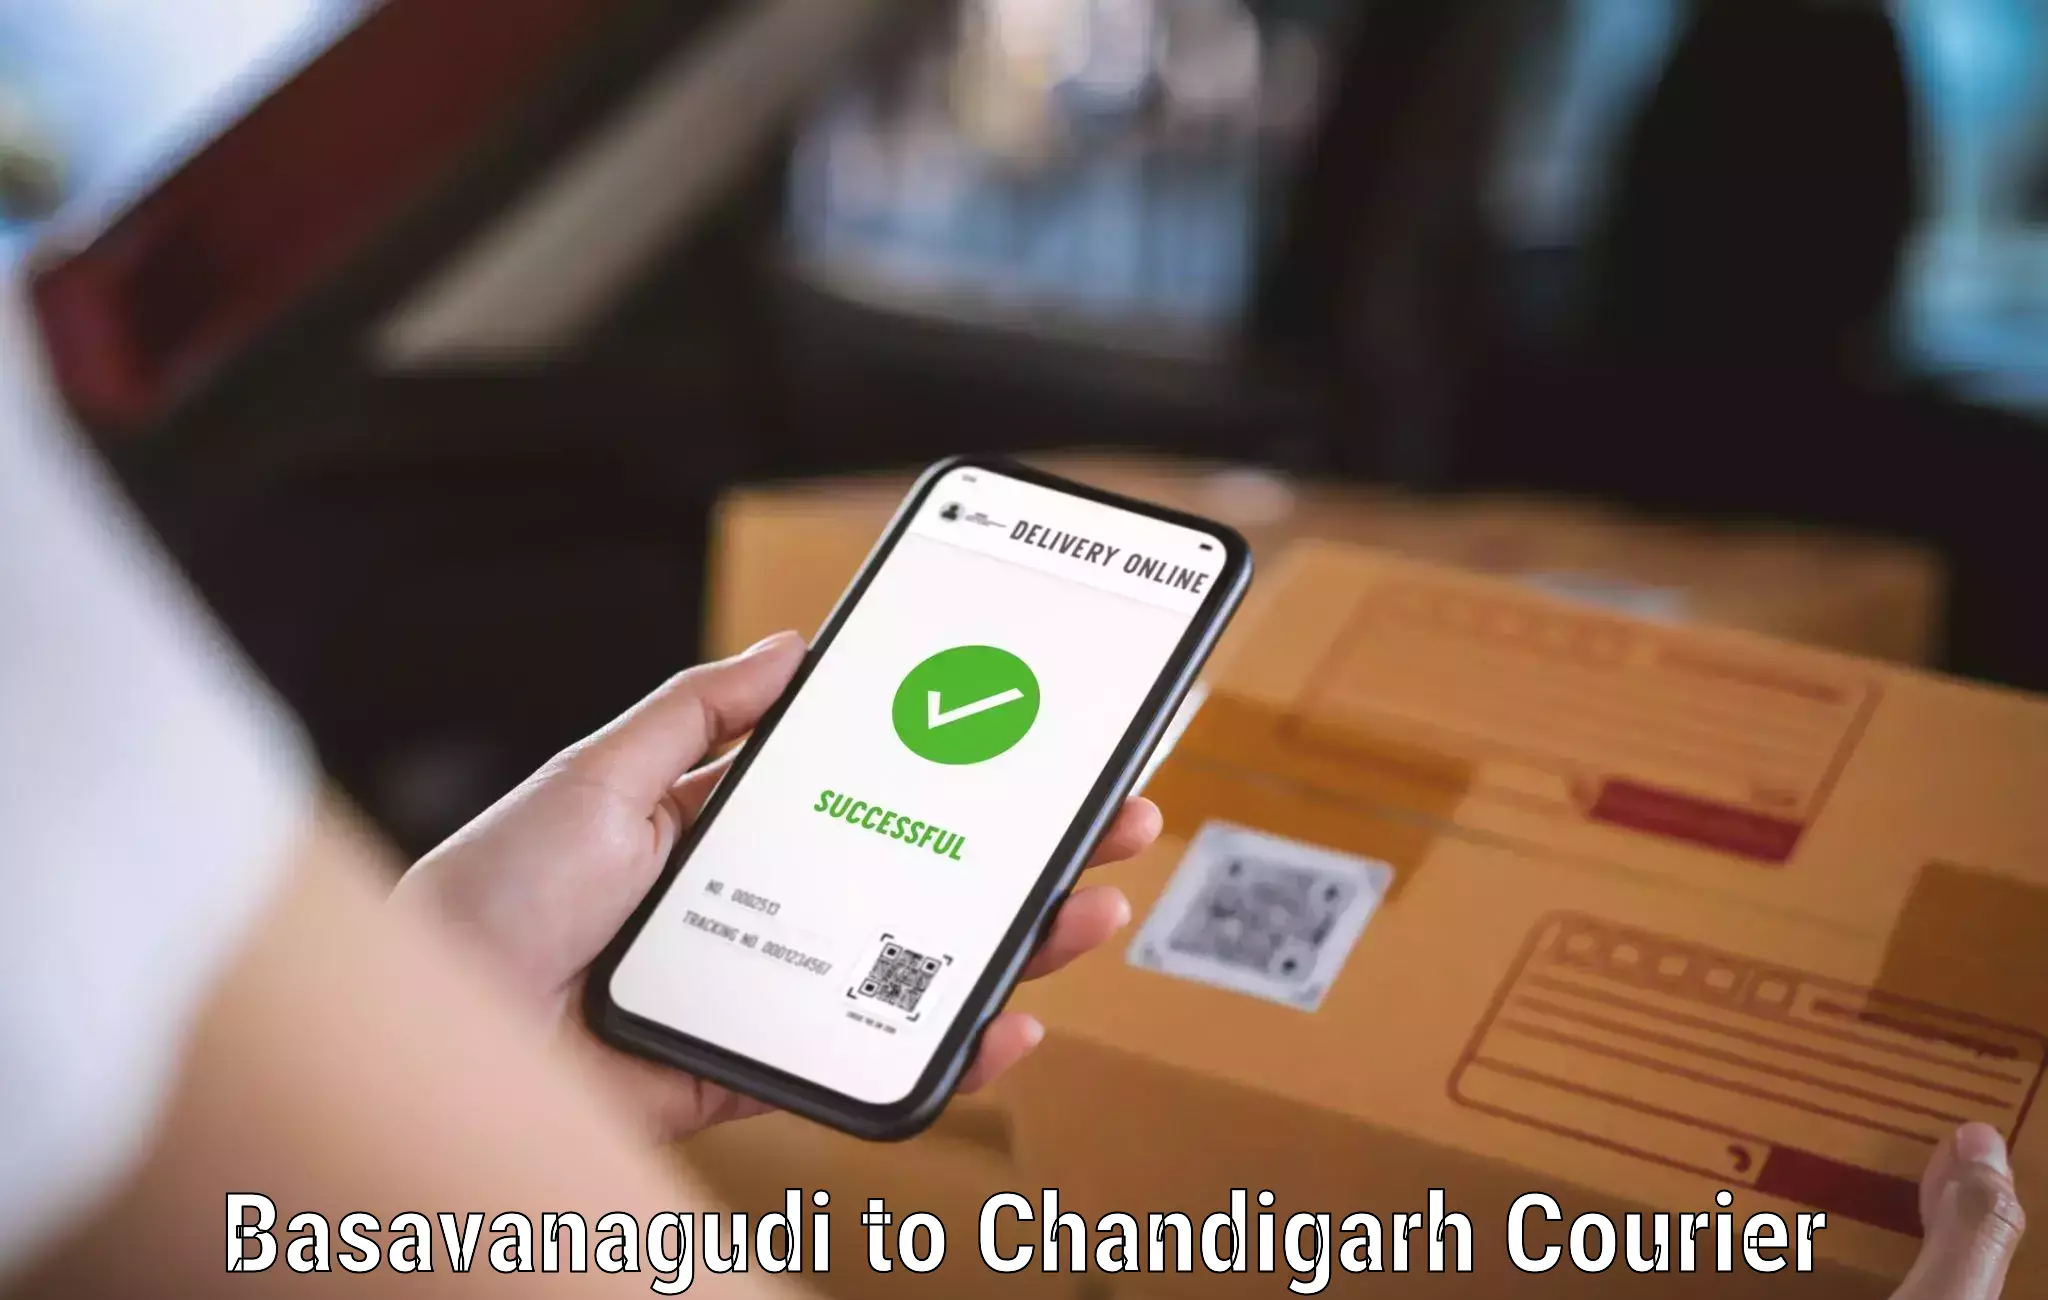 Quick courier services Basavanagudi to Chandigarh